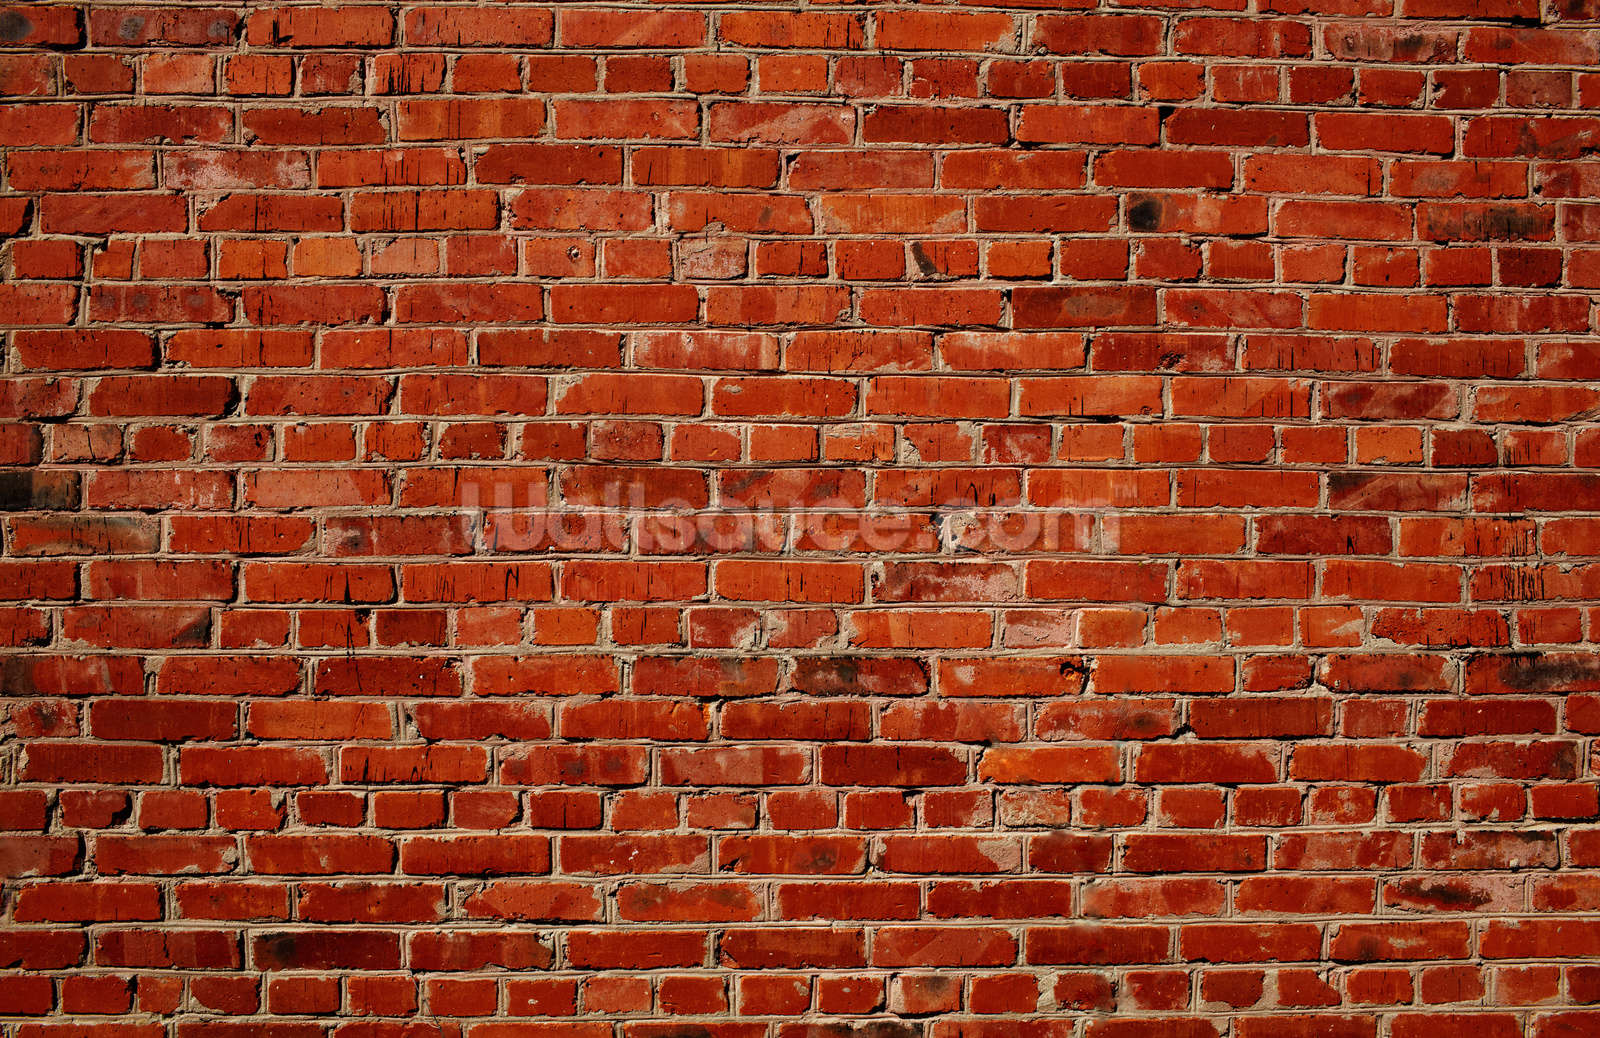 Red Brick Wall Wallpaper | Wallsauce US